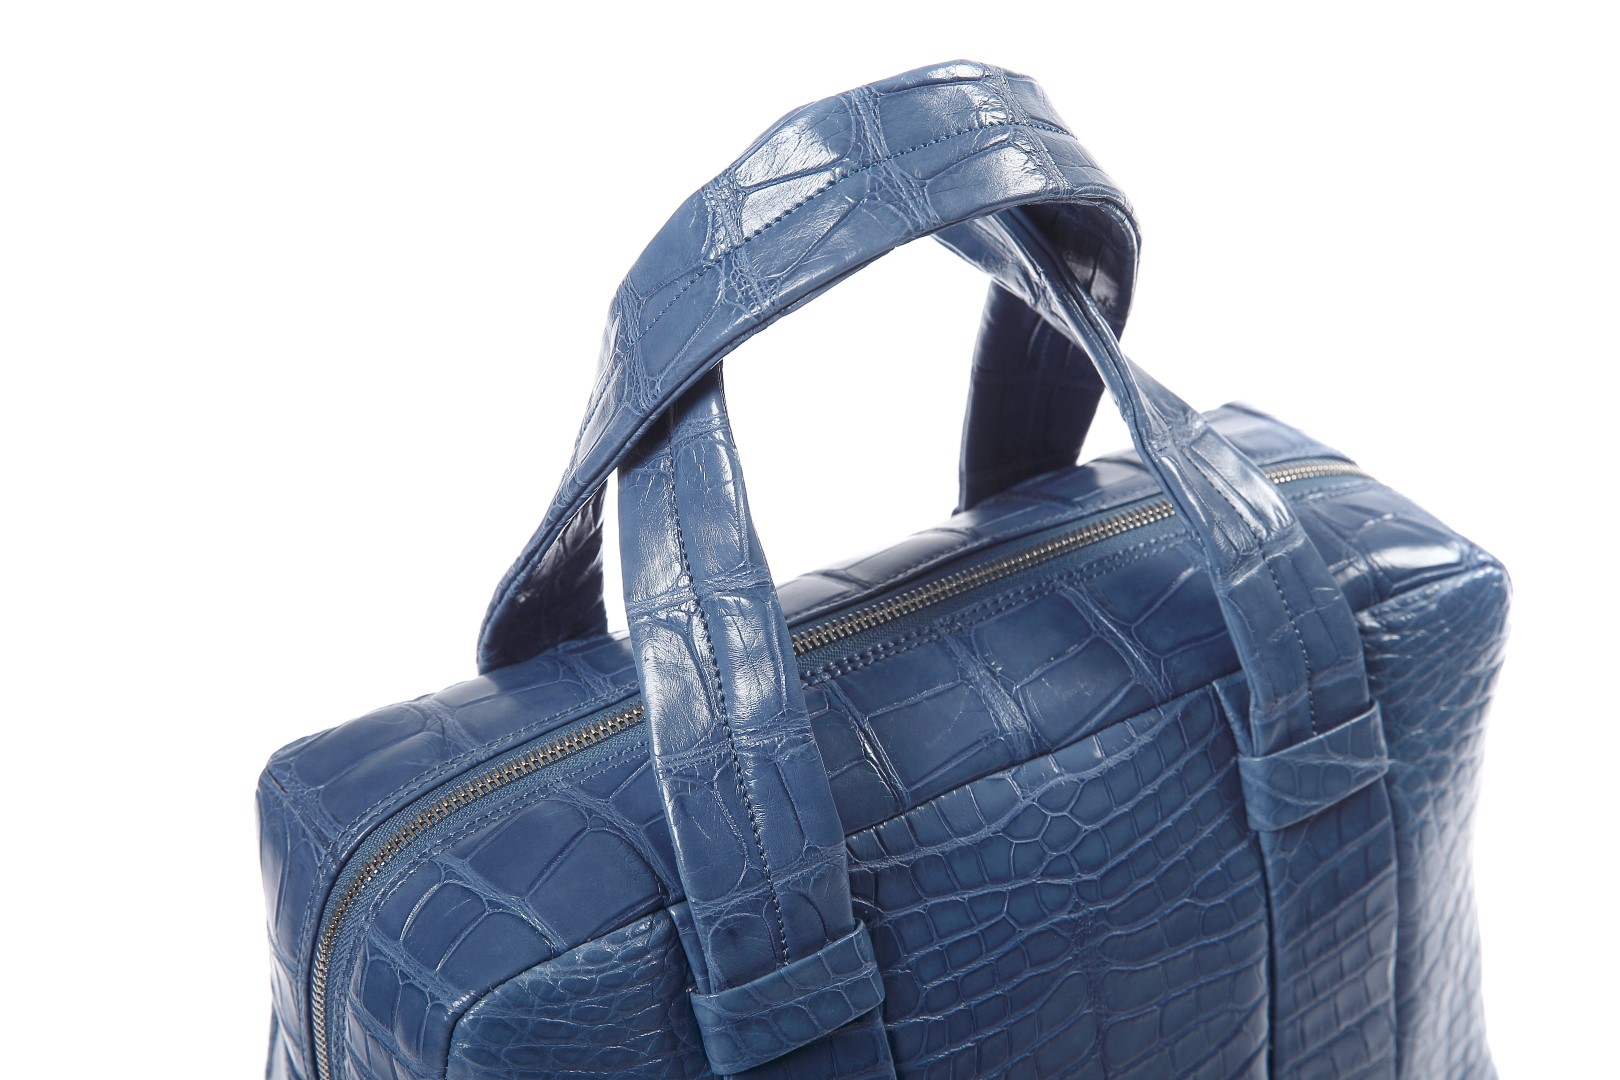 Parmeggiani borse 2016: Treasures of Blue, la nuova capsule collection